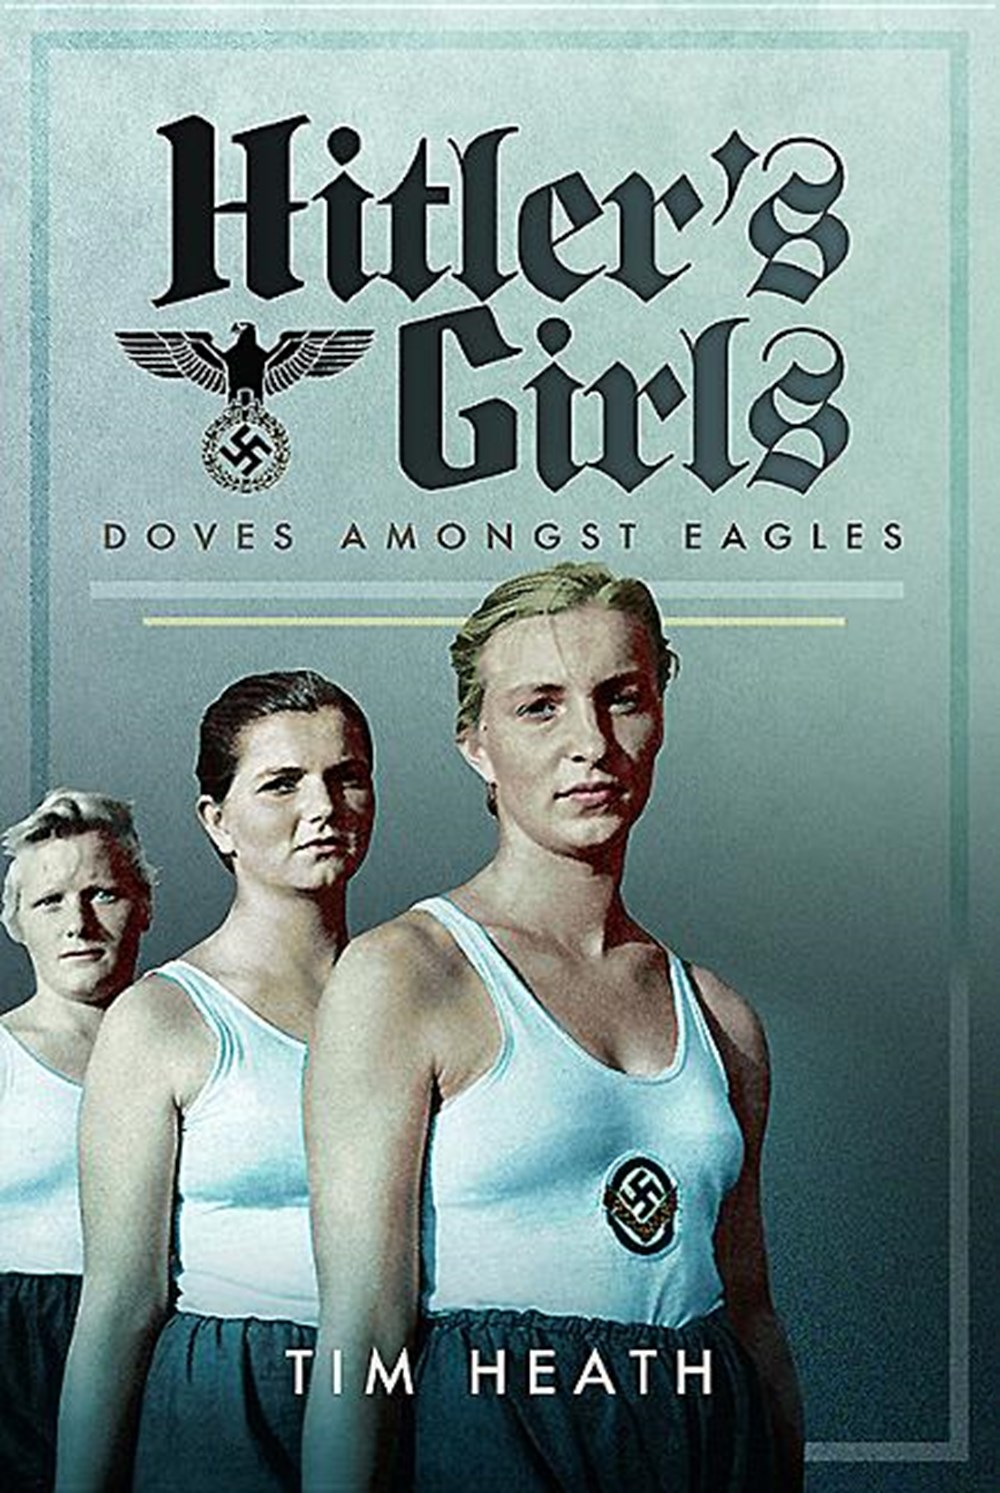 Hitler's Girls: Doves Amongst Eagles